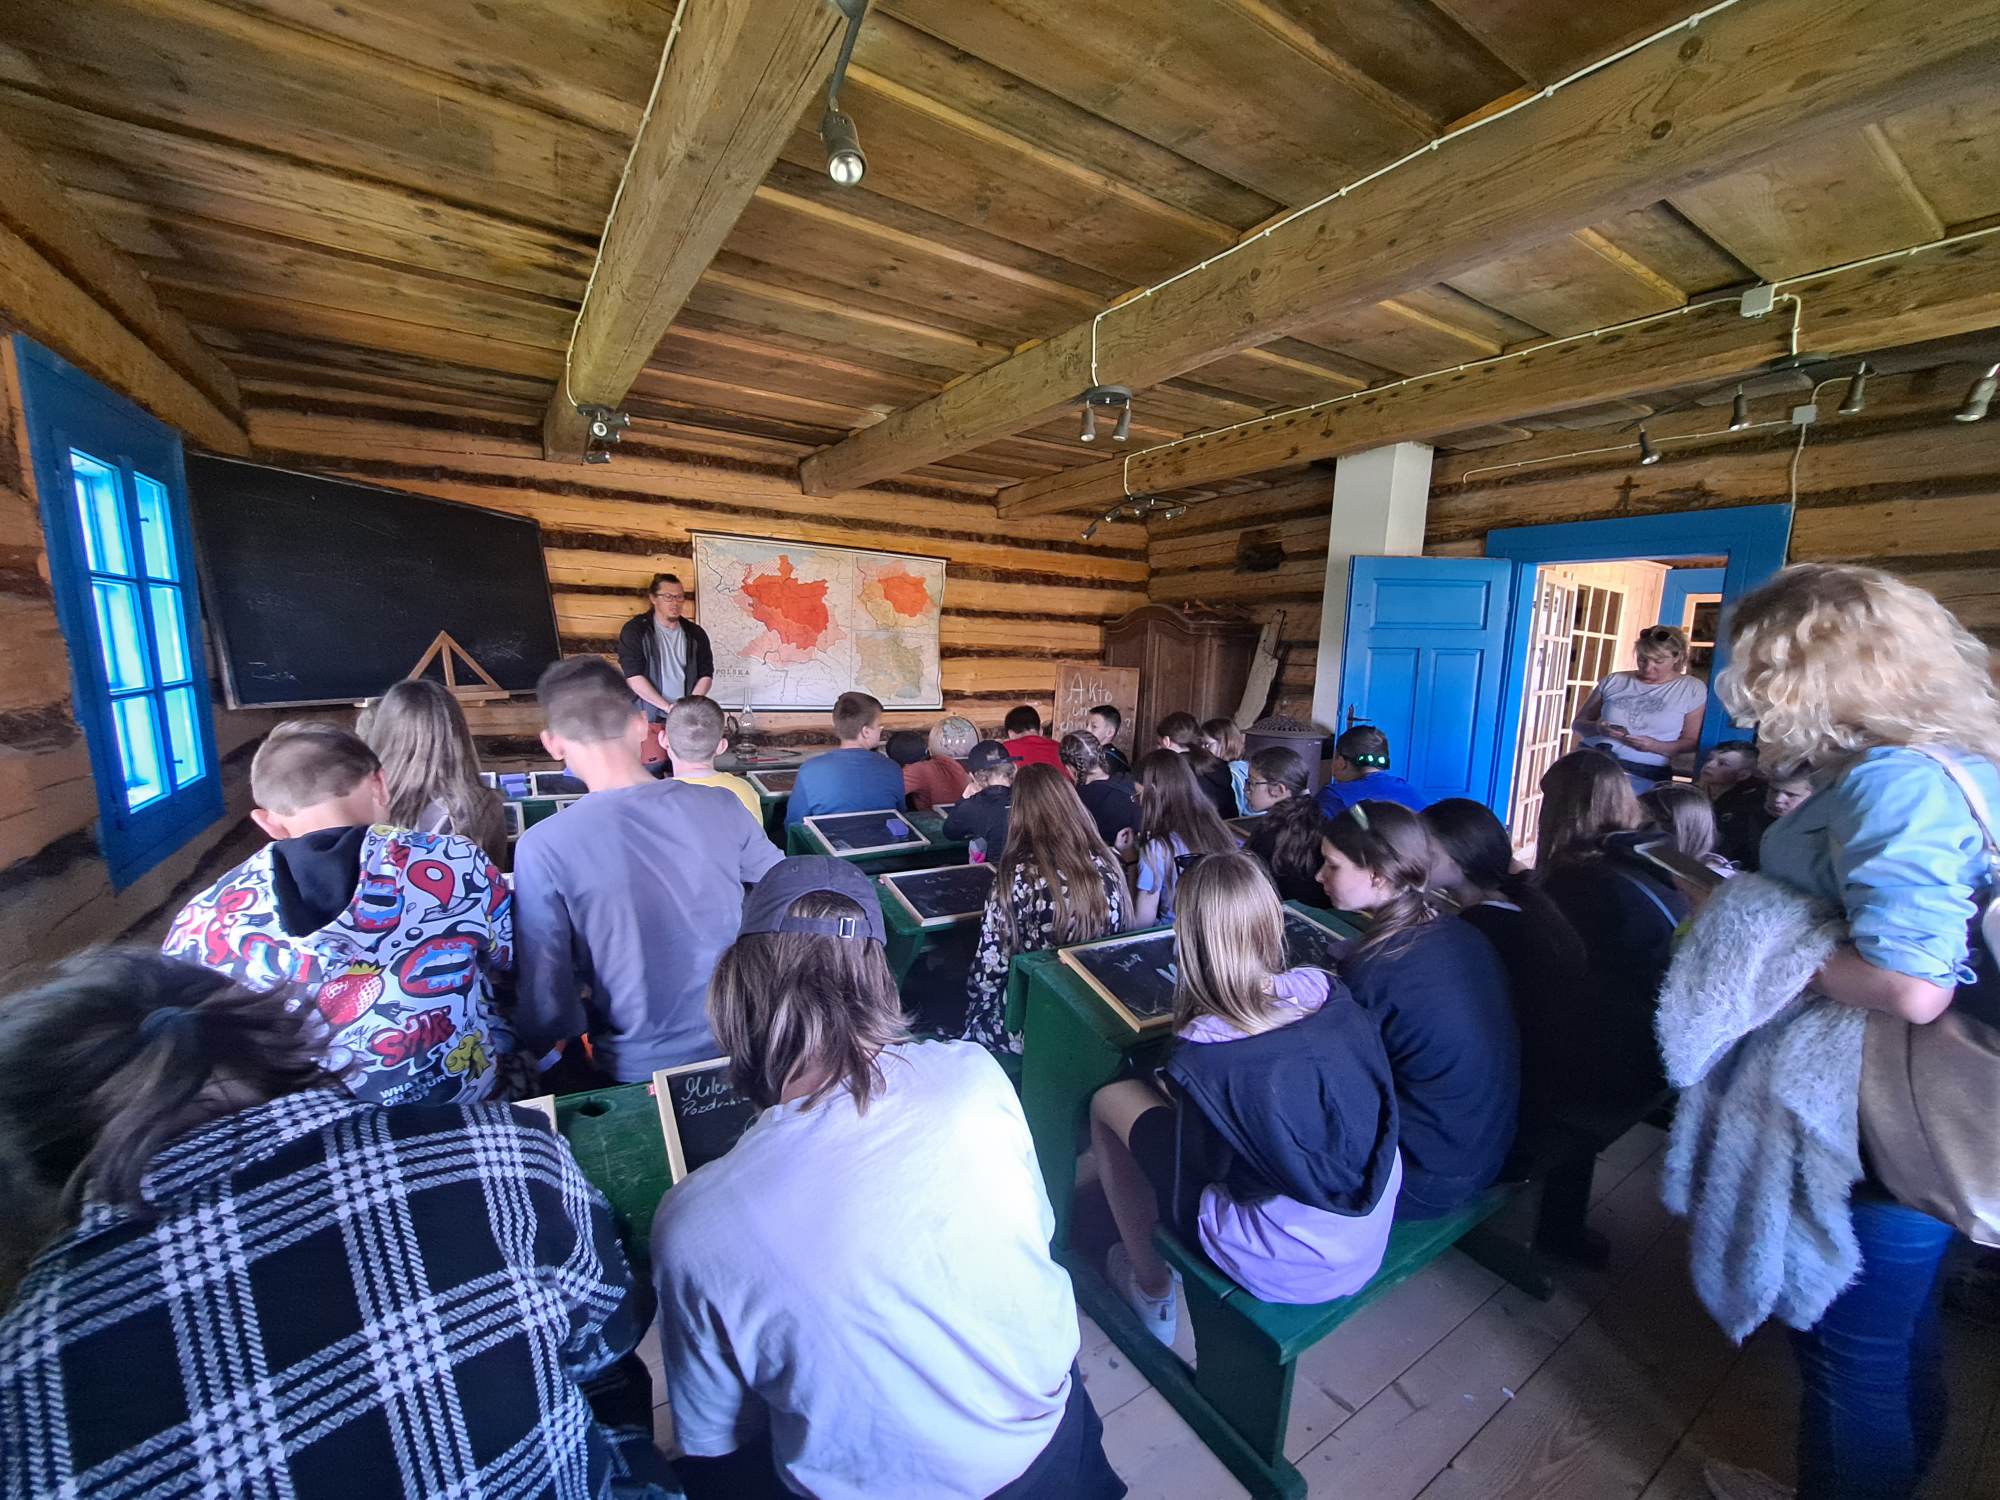 Uczniowie siedzą w ławkach dawnej szkoły znajdującej się w Muzeum - Orawskim Parku Etnograficznym, słuchają przewodnika i piszą kredą na tabliczkach.